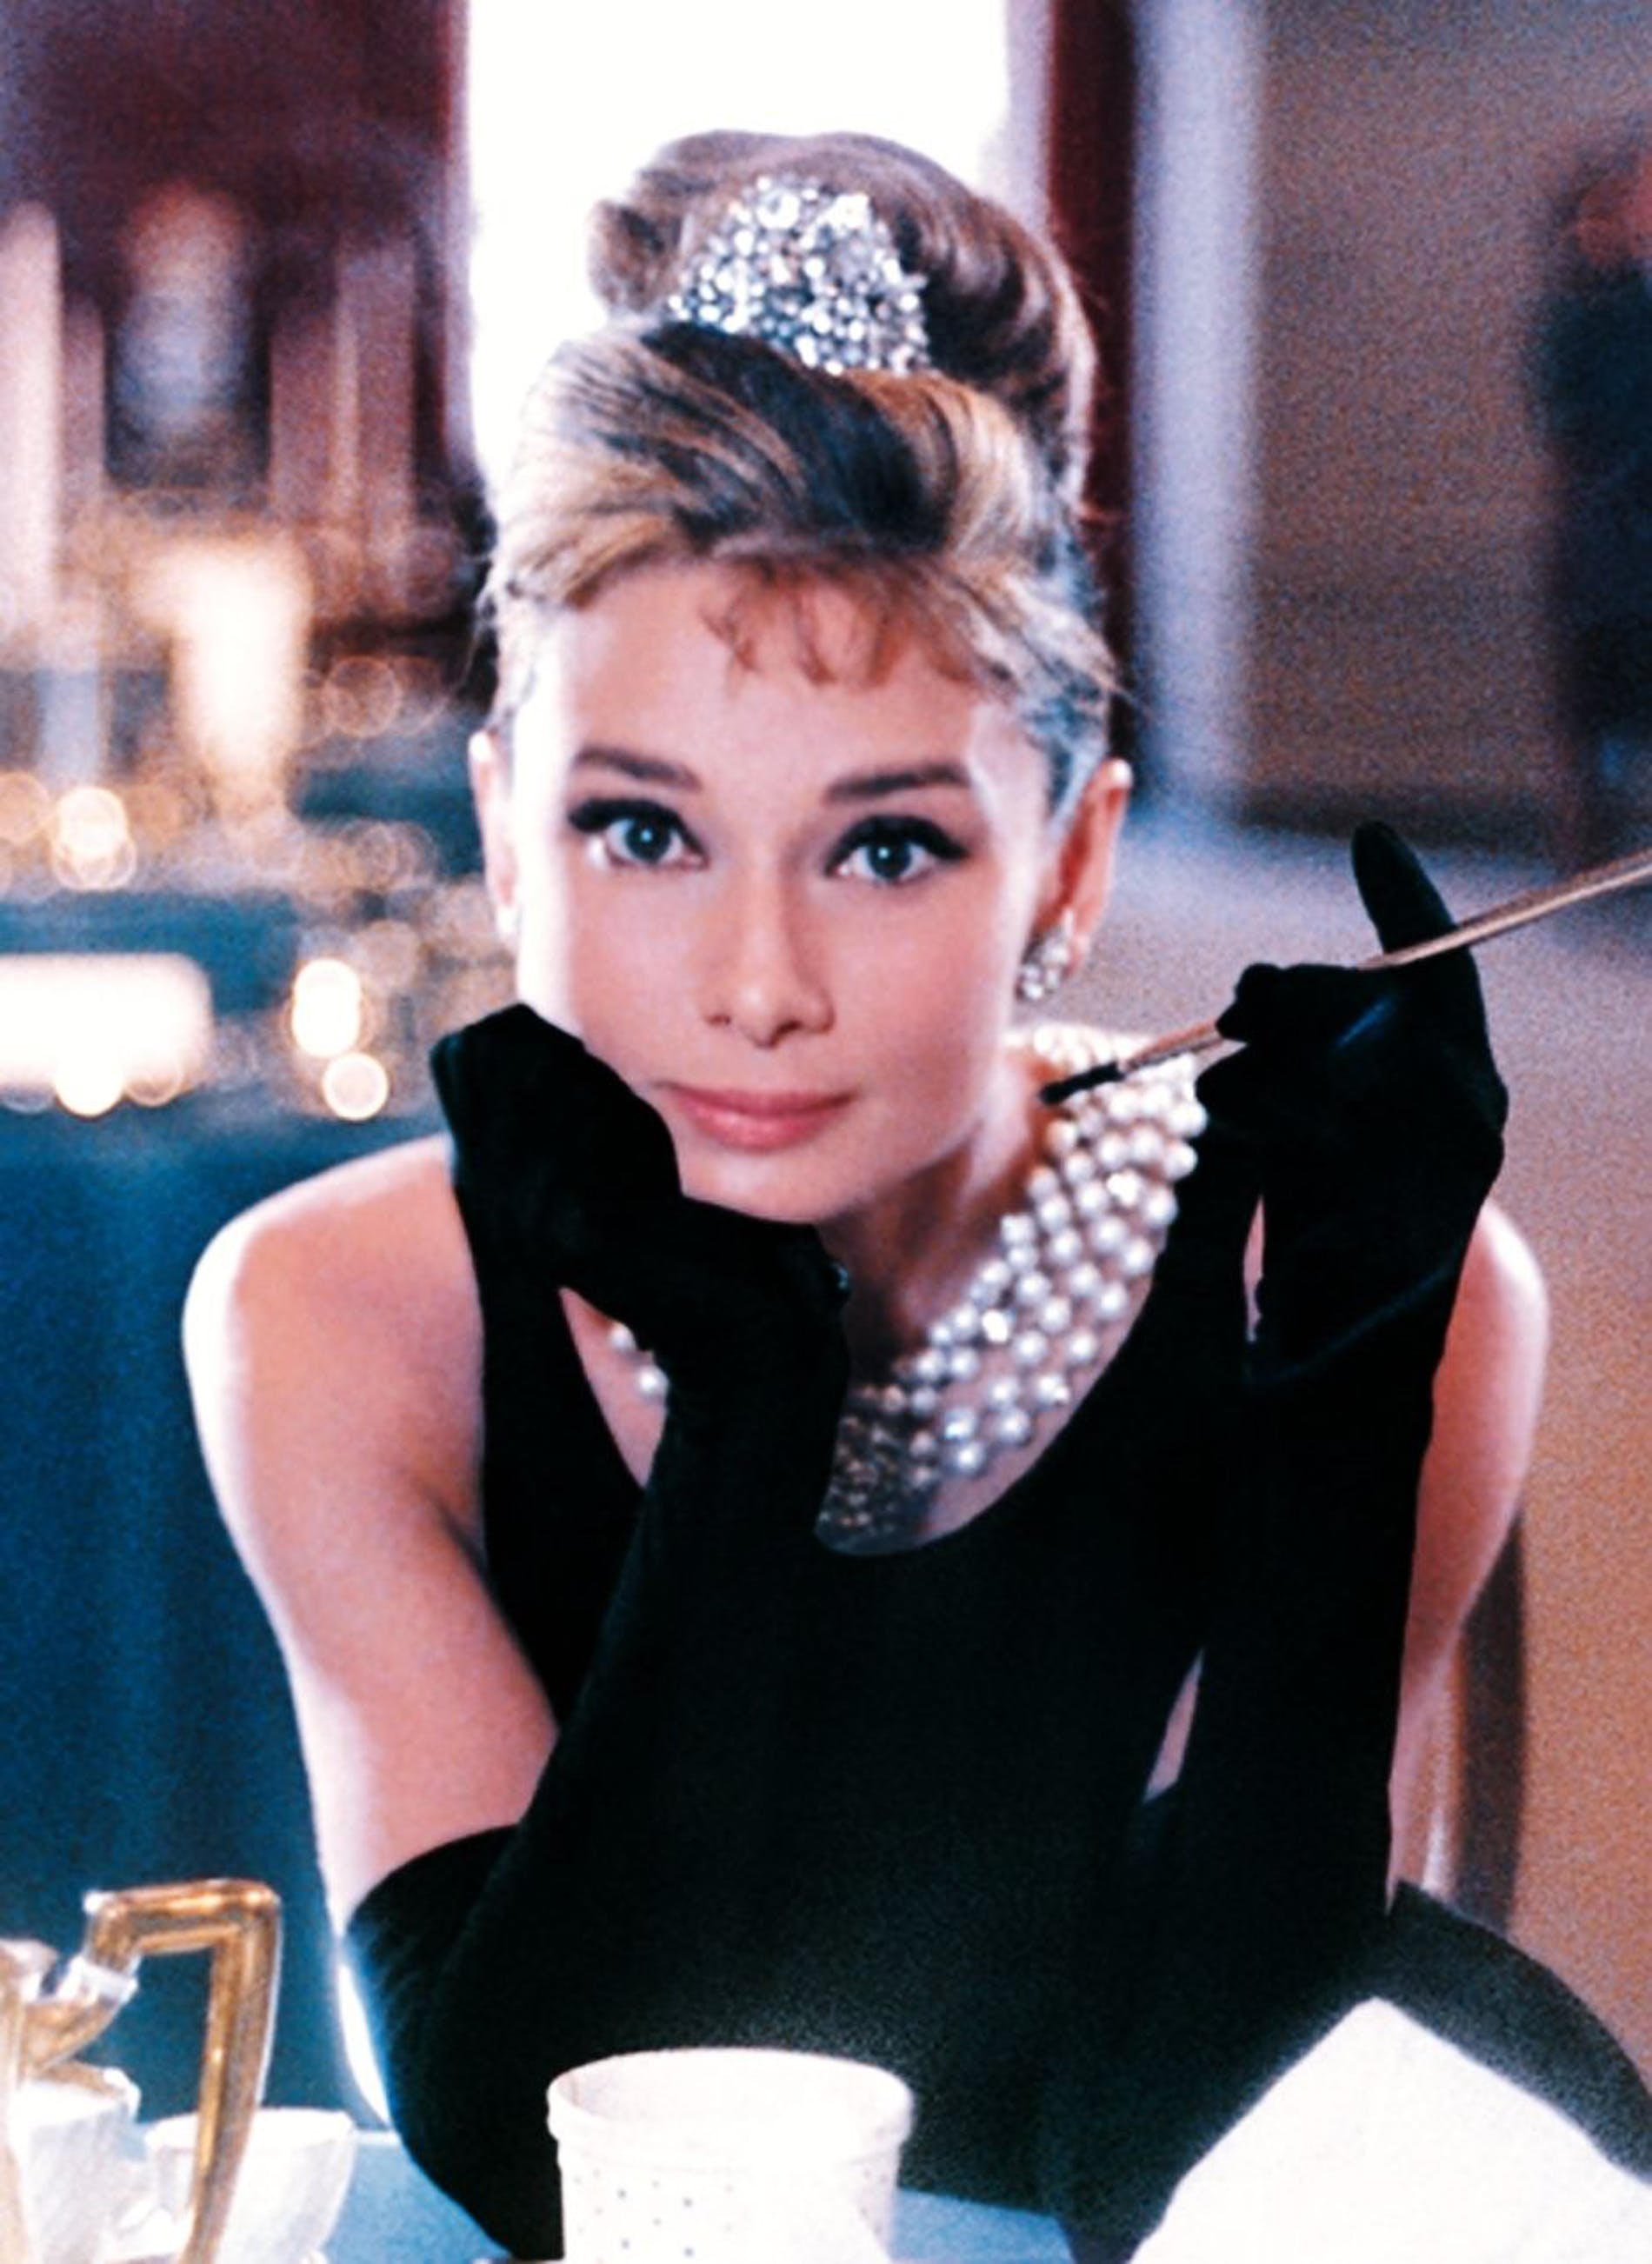 Nữ minh tinh Audrey Hepburn là một trong những người giúp cho găng tay phổ biến hơn tới công chứng. Trong bộ phim Breakfast at Tiffany's, nữ minh tinh thường xuyên xuất hiện với đôi găng tay trên mình.